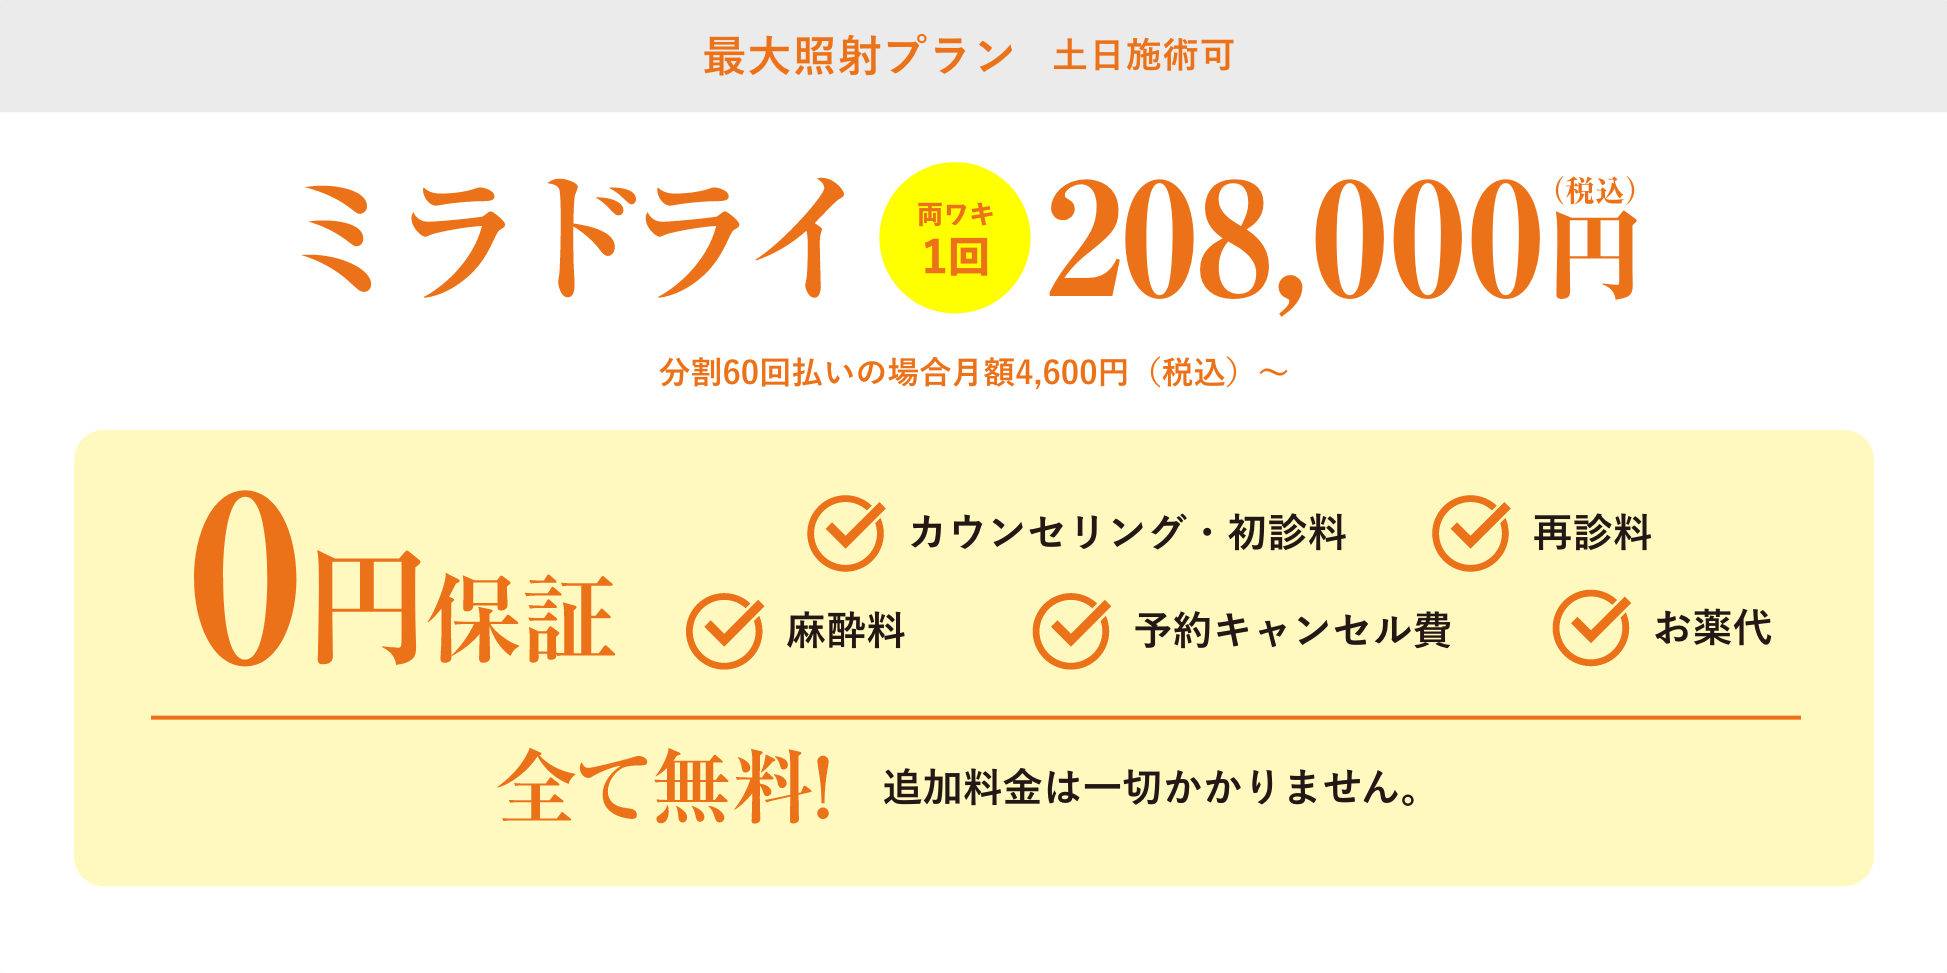 最大照射プラン平日施術割キャンペーン242,000円